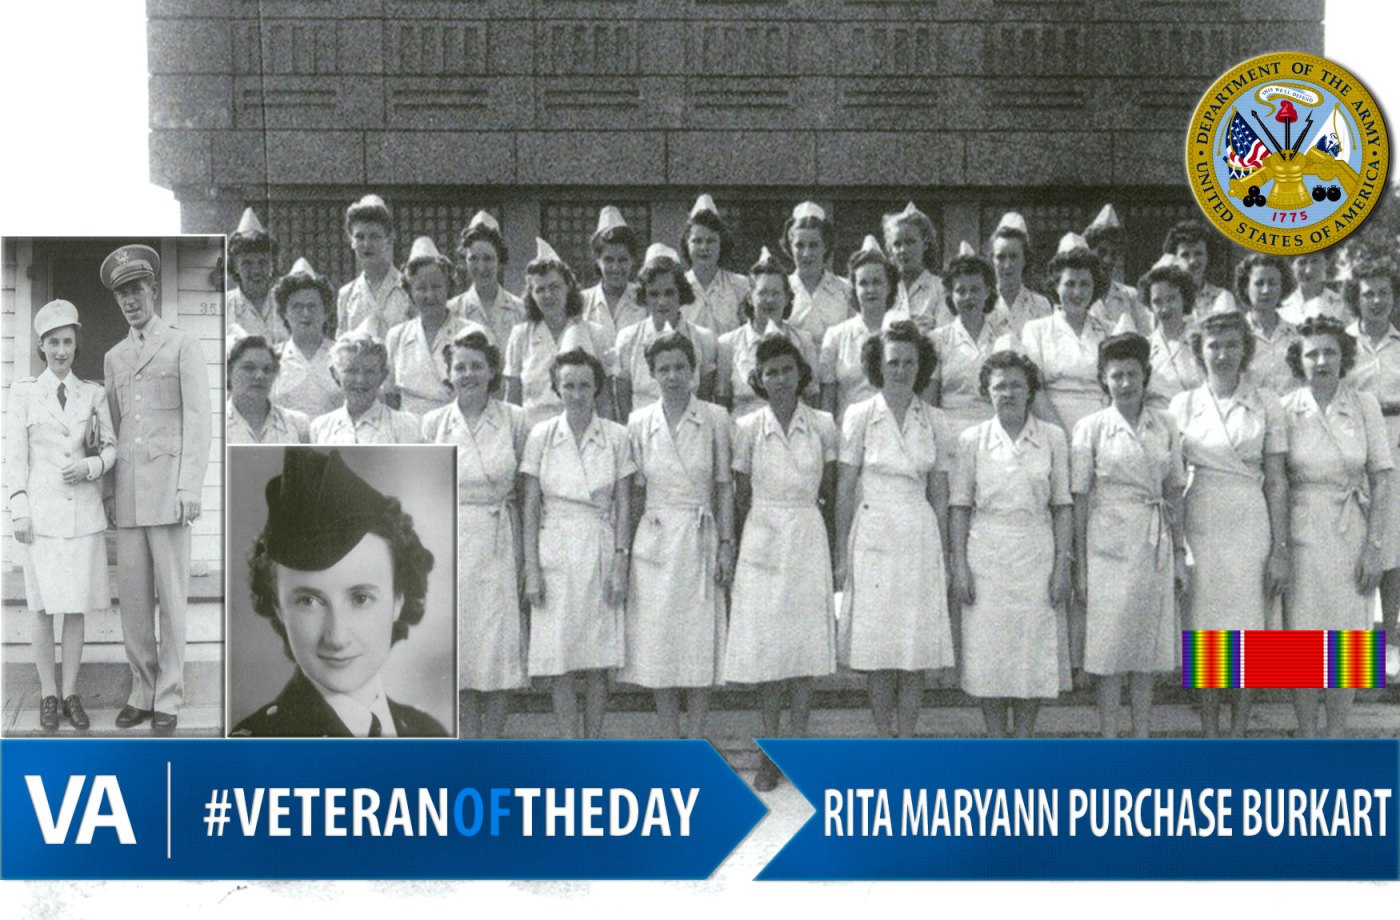 Rita Burkart - Veteran of the Day